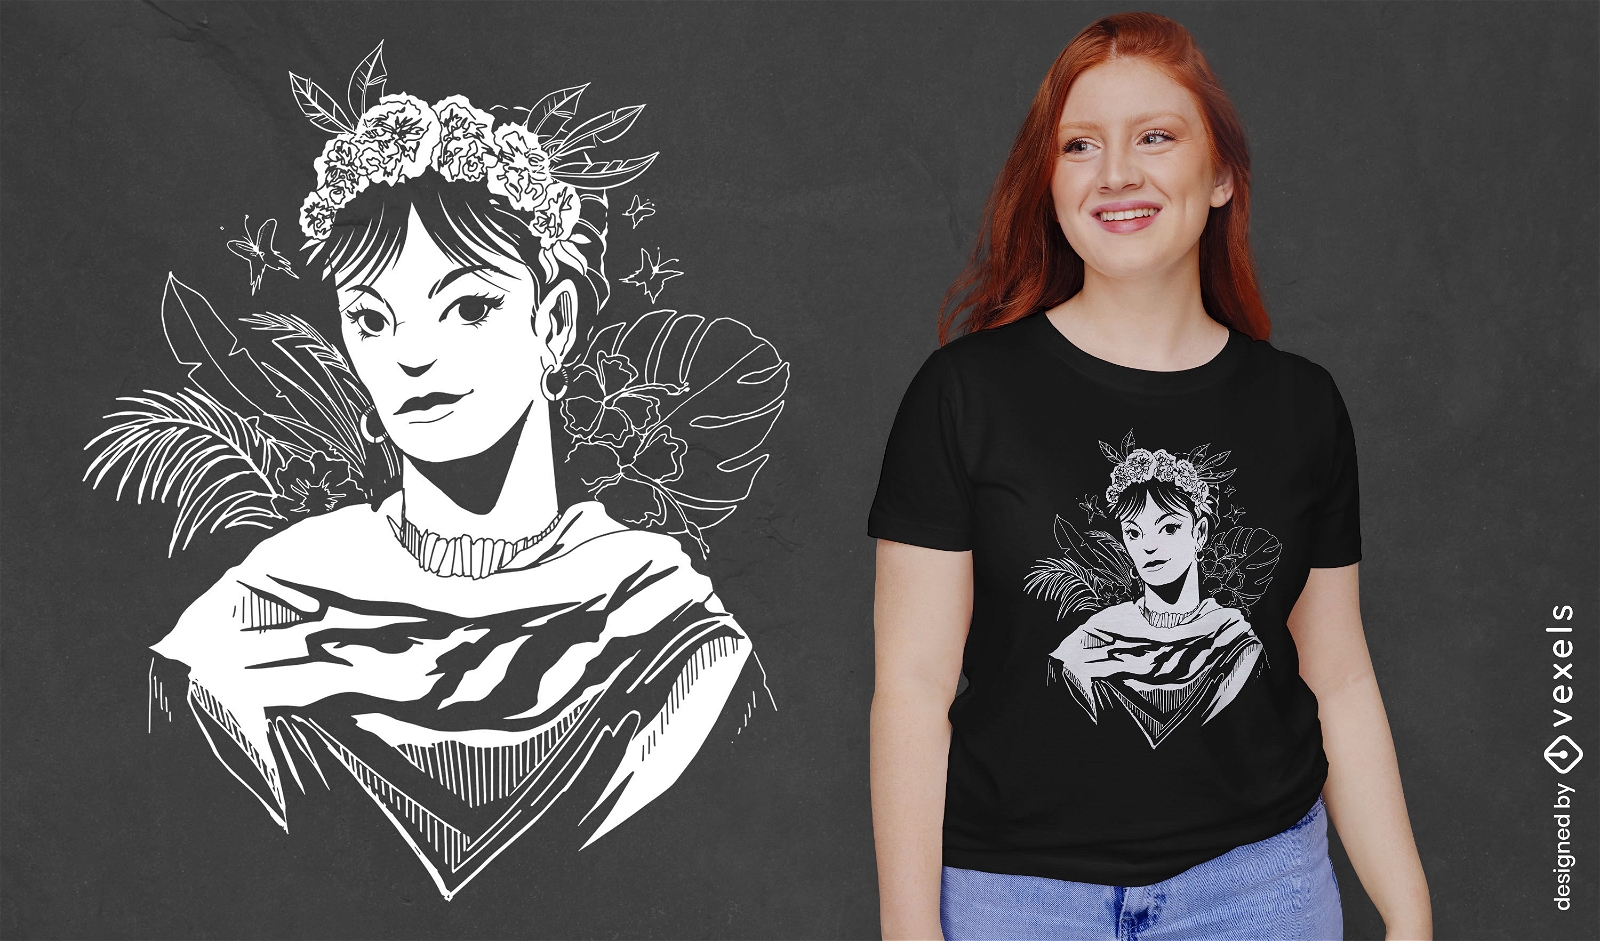 Black and white woman floral portrait t-shirt design